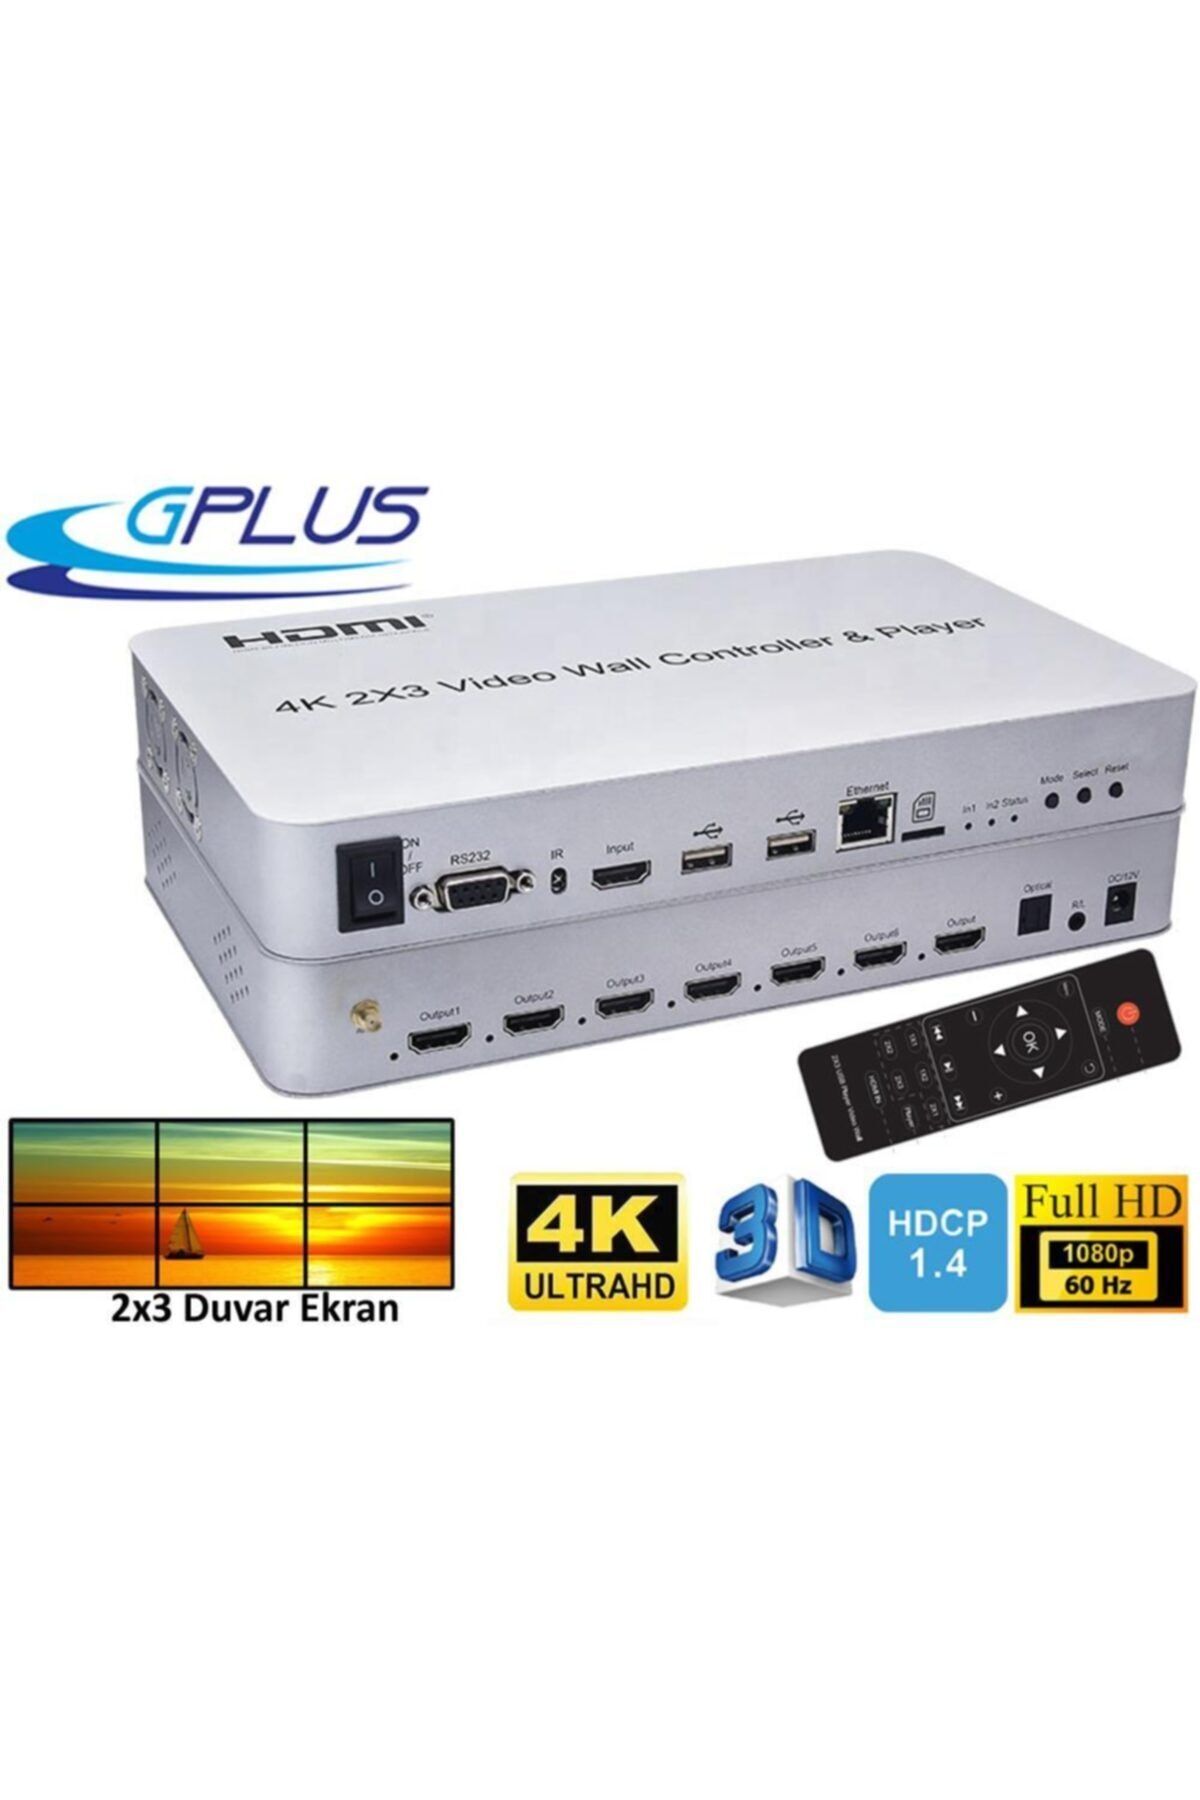 Gplus 4kvw344p 2x3 Video Wall Controller Hdmı 6 Çıkış Duvar Ekran